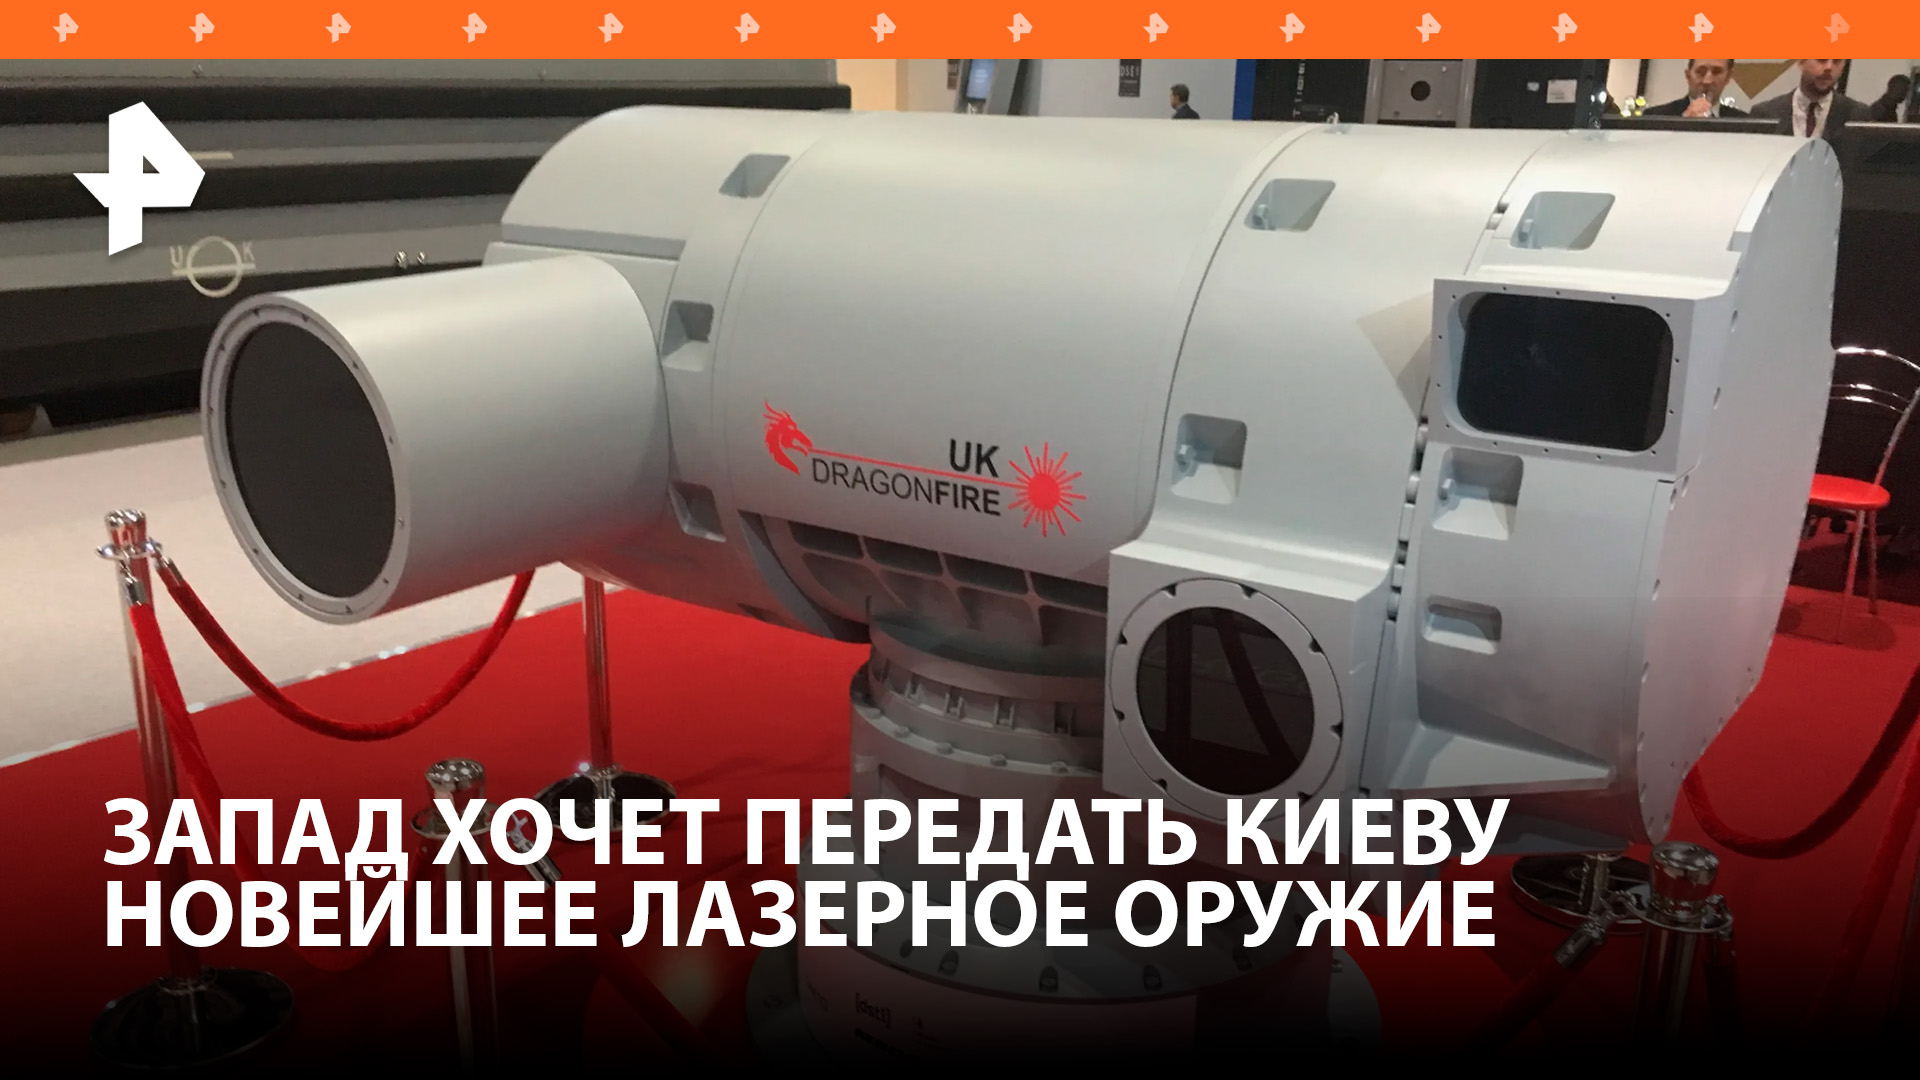 Украина получит экспериментальный британский лазер Dragon Fire / РЕН Новости